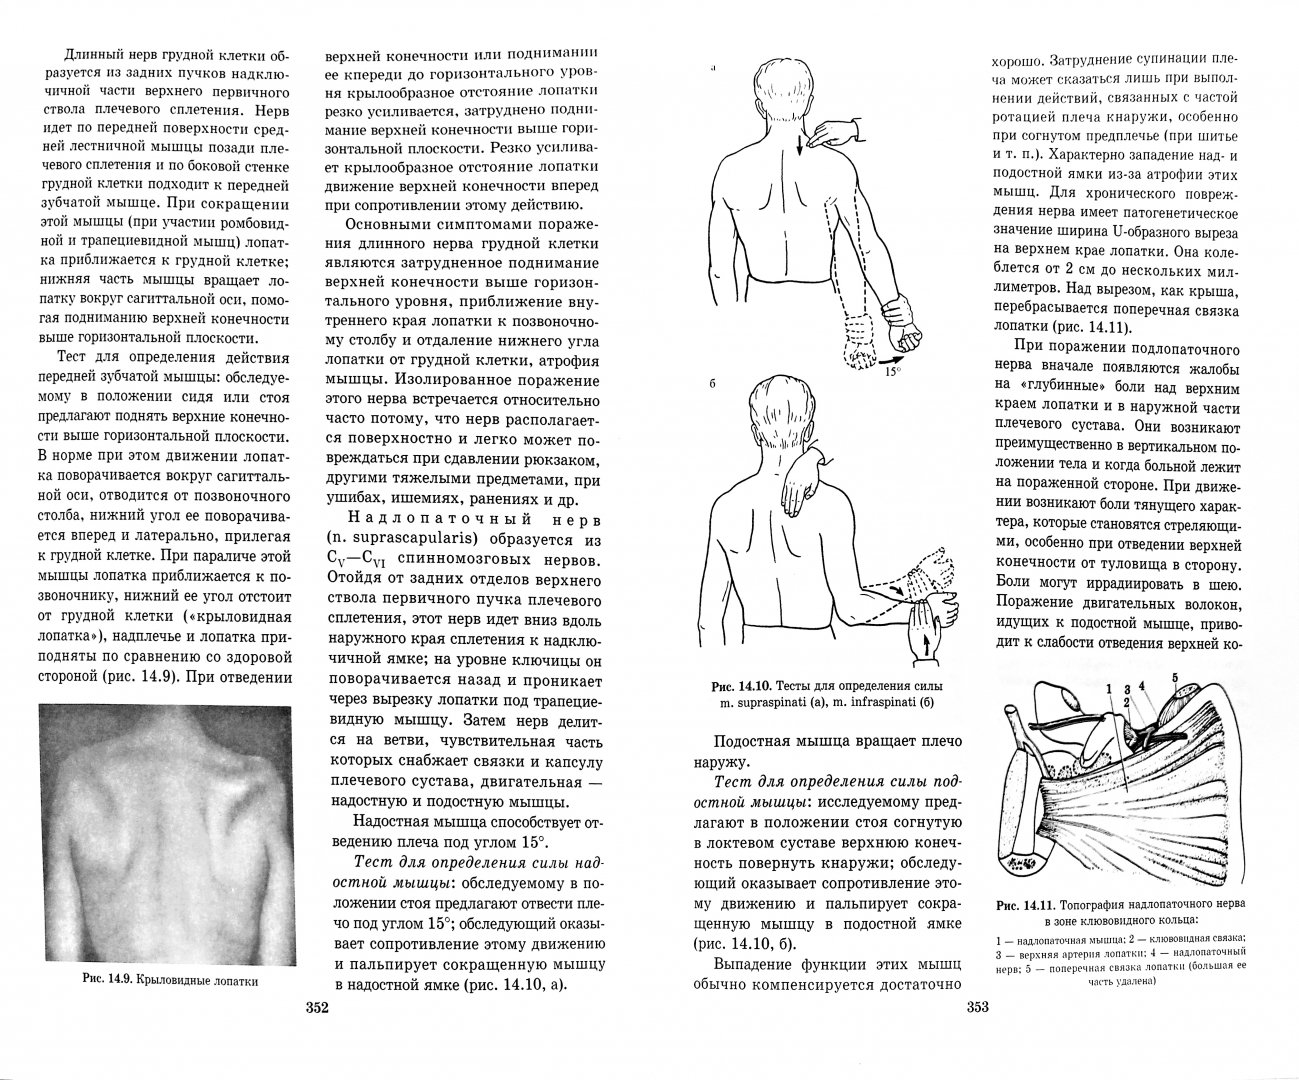 Иллюстрация 1 из 17 для Топическая диагностика заболеваний нервной системы. Руководство для врачей - Скоромец, Скоромец, Скоромец | Лабиринт - книги. Источник: Лабиринт